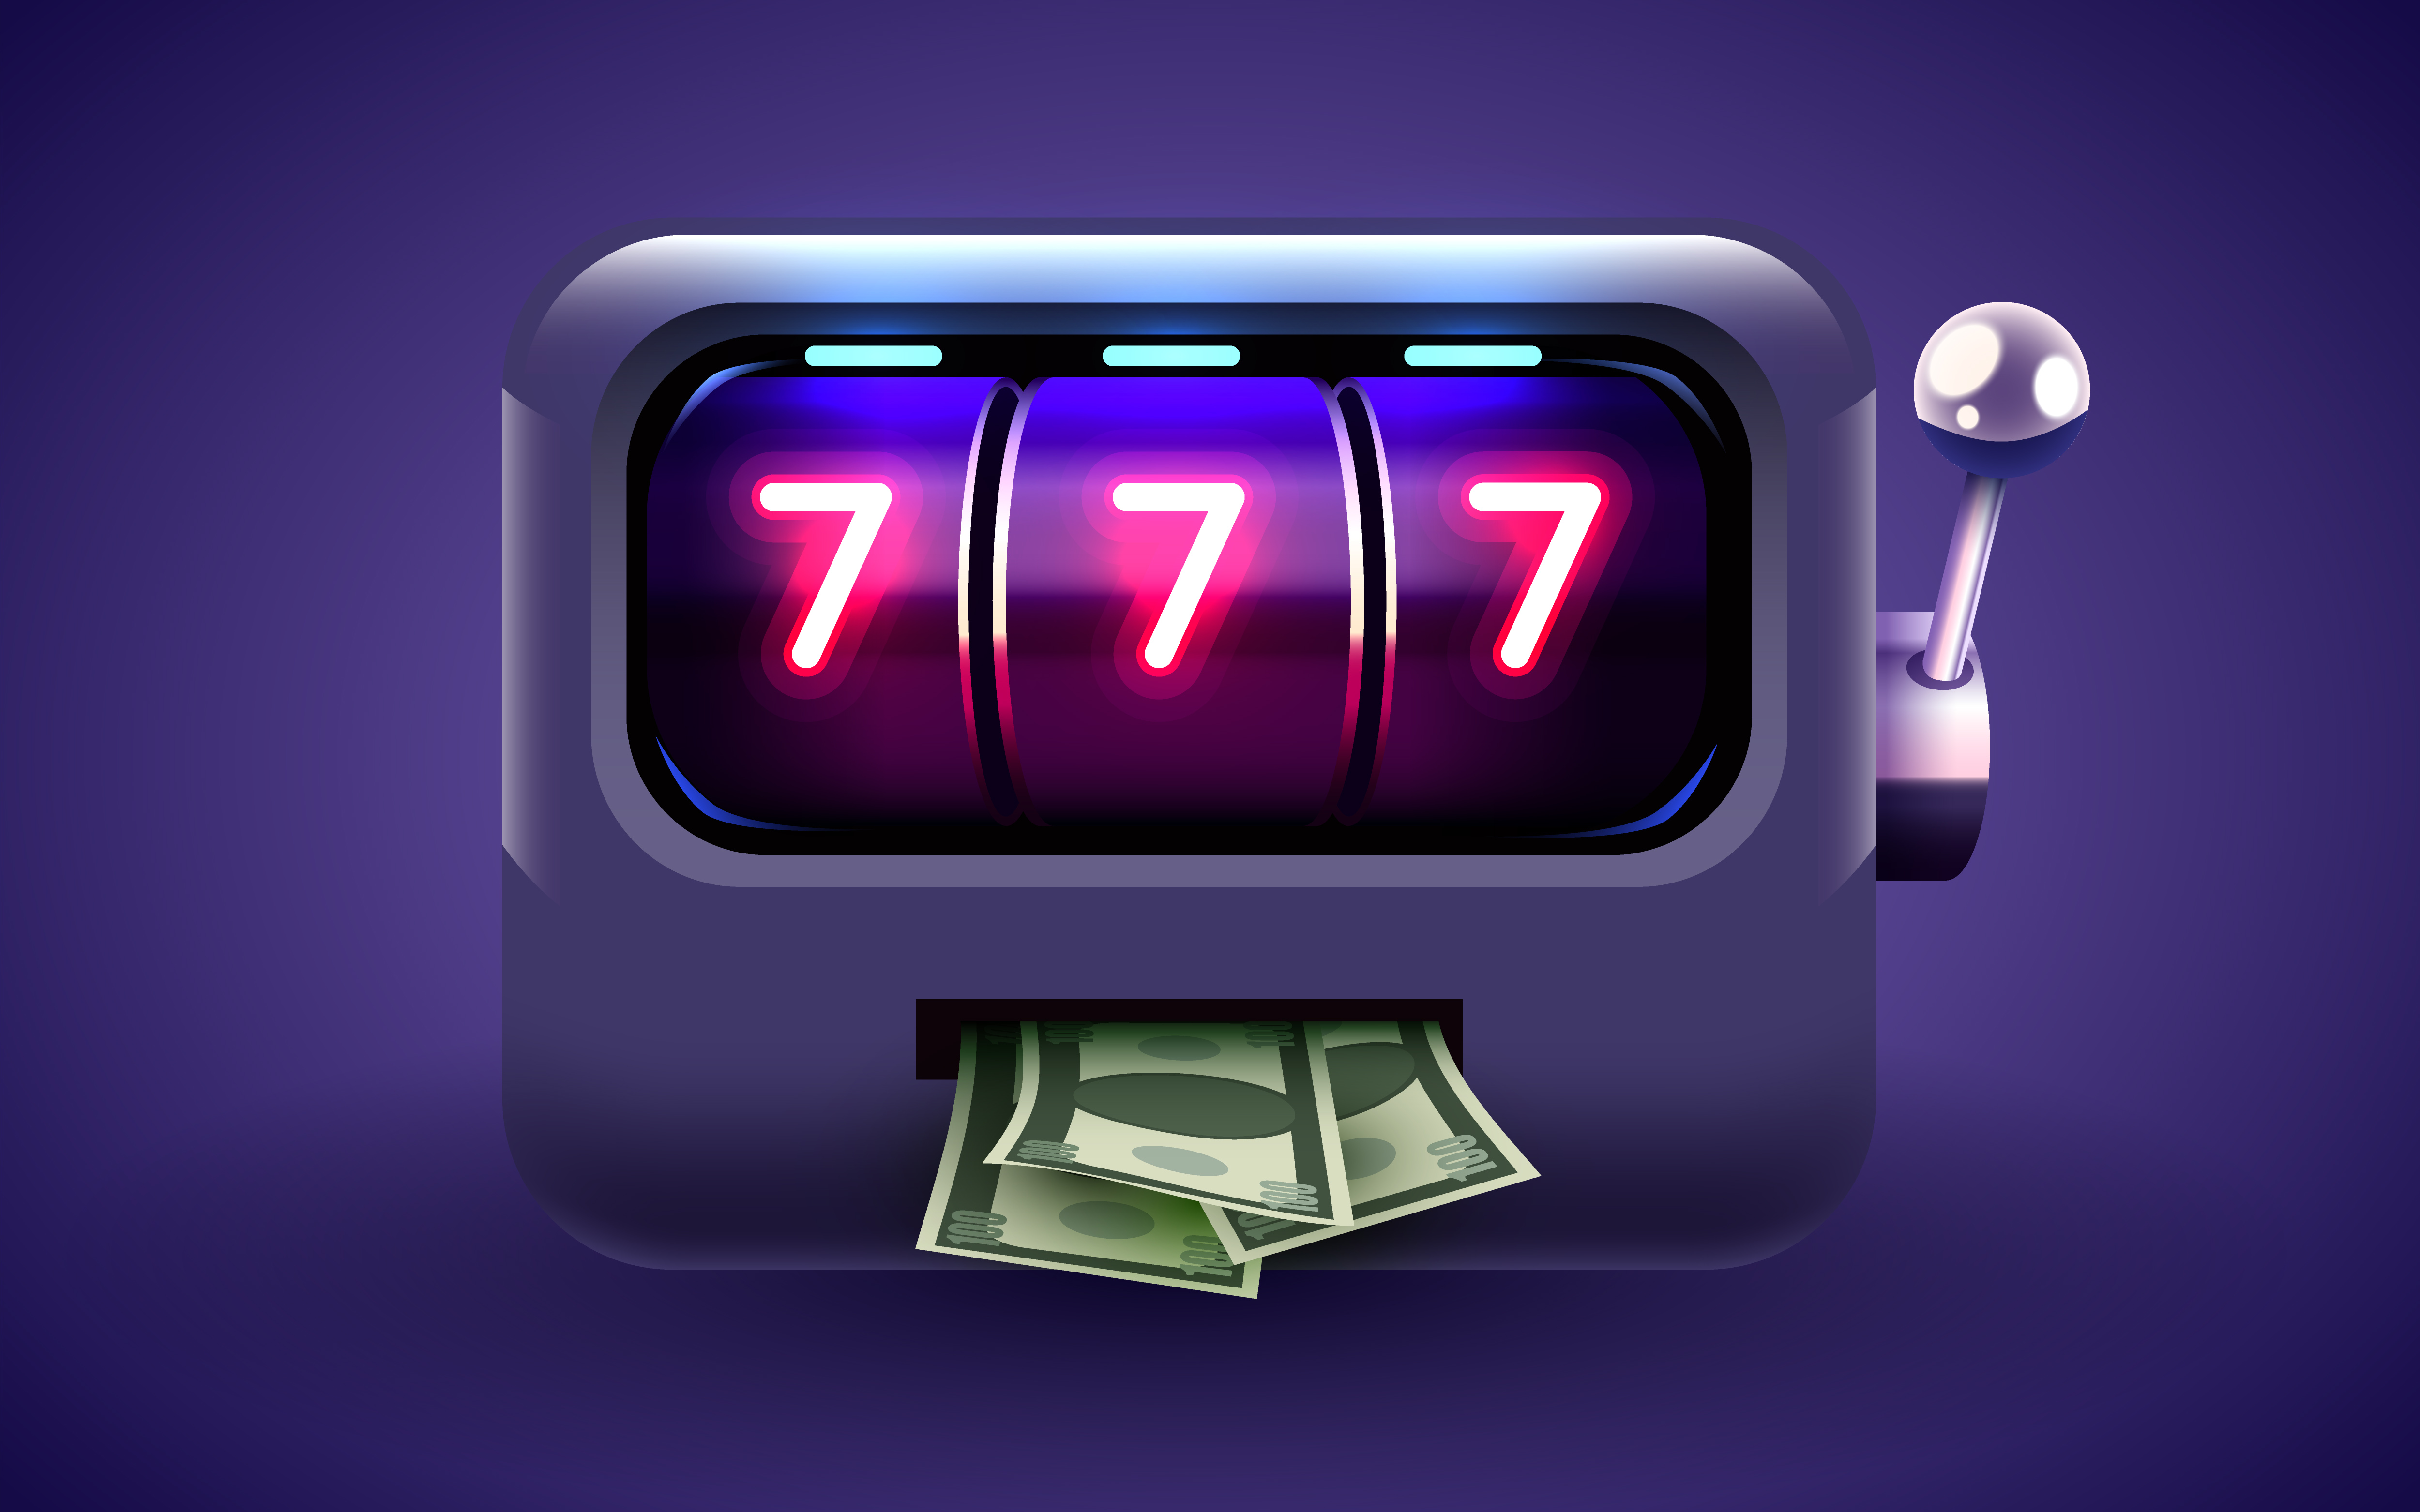 Dark purple slot machine winning the jackpot via hitting 777